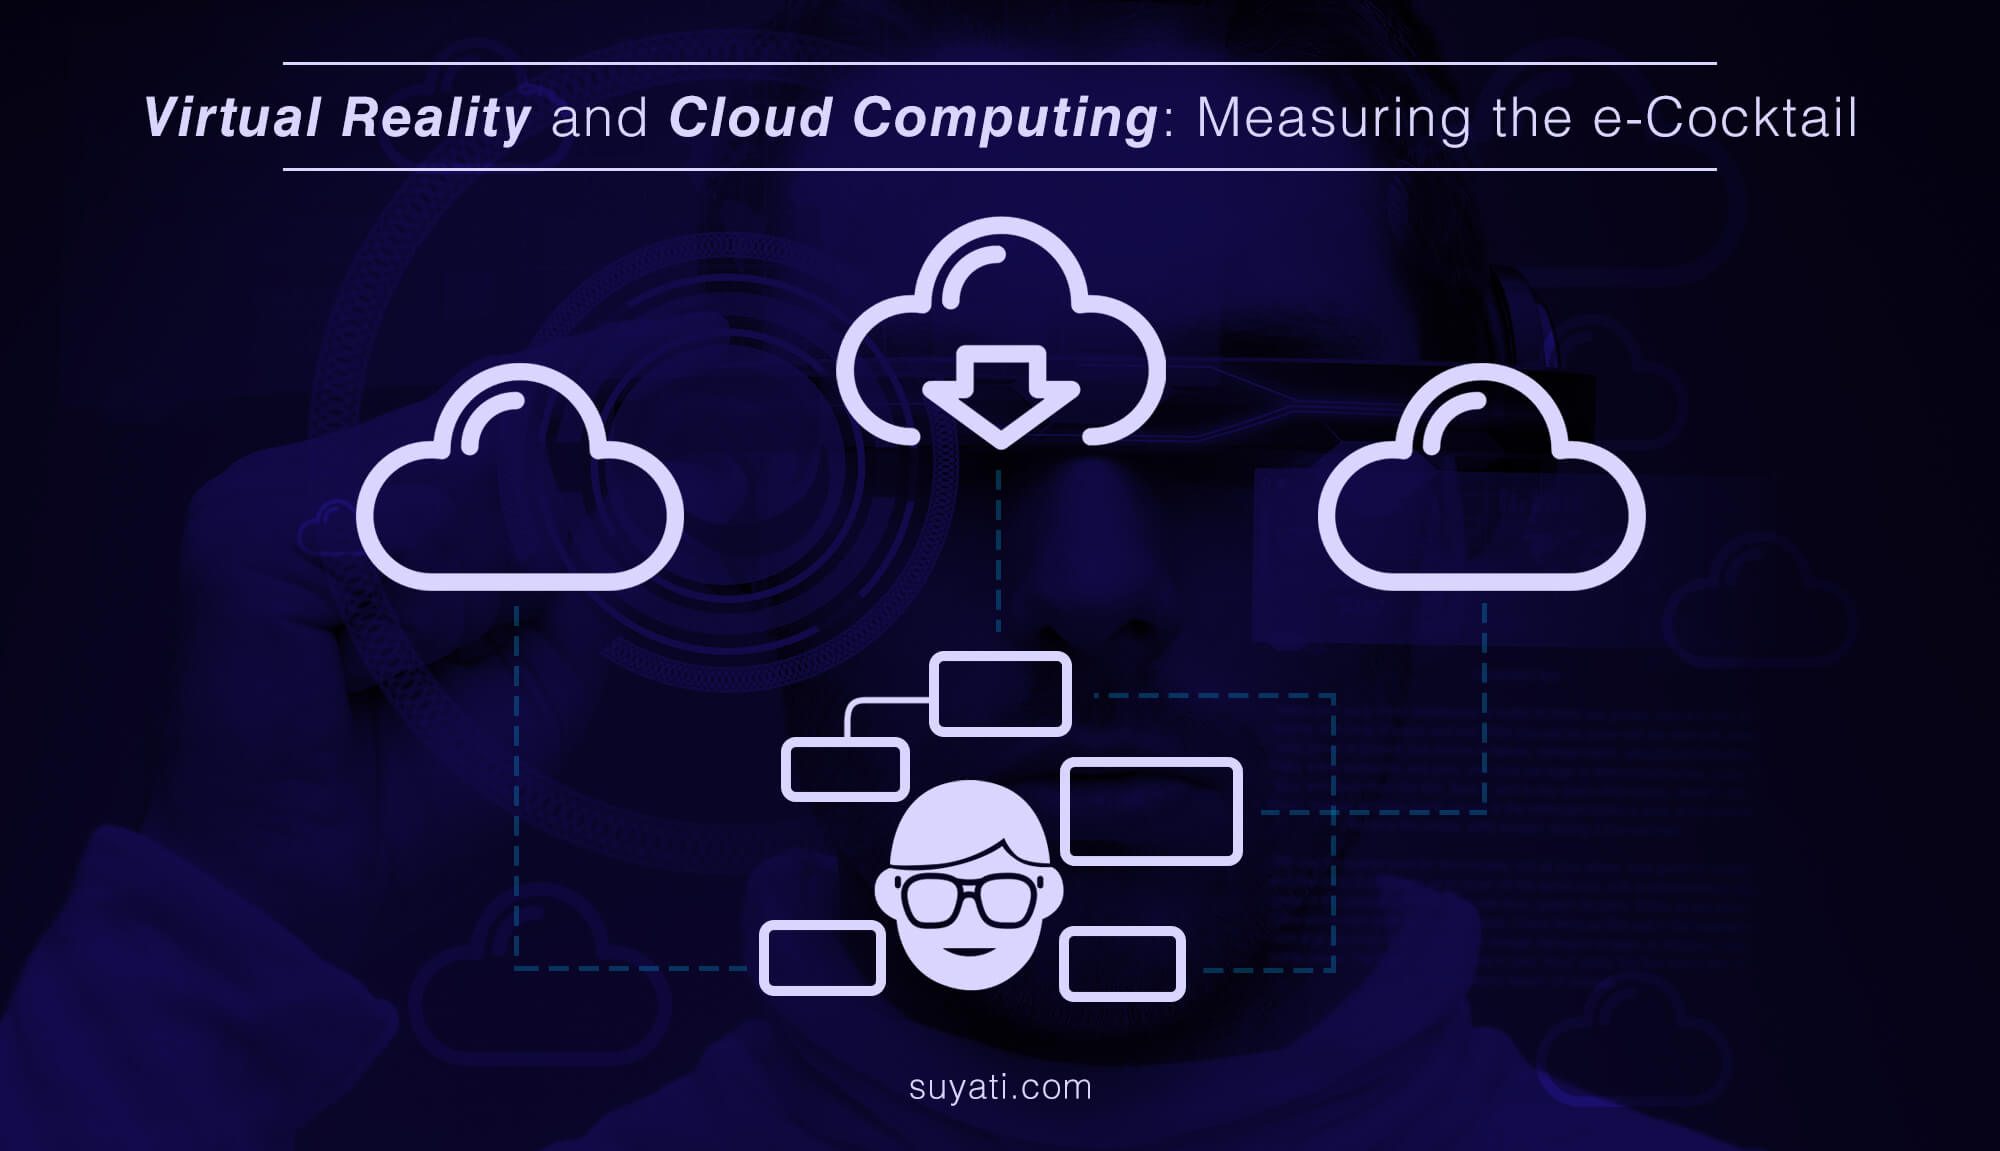 Cloud computing and virtual reality